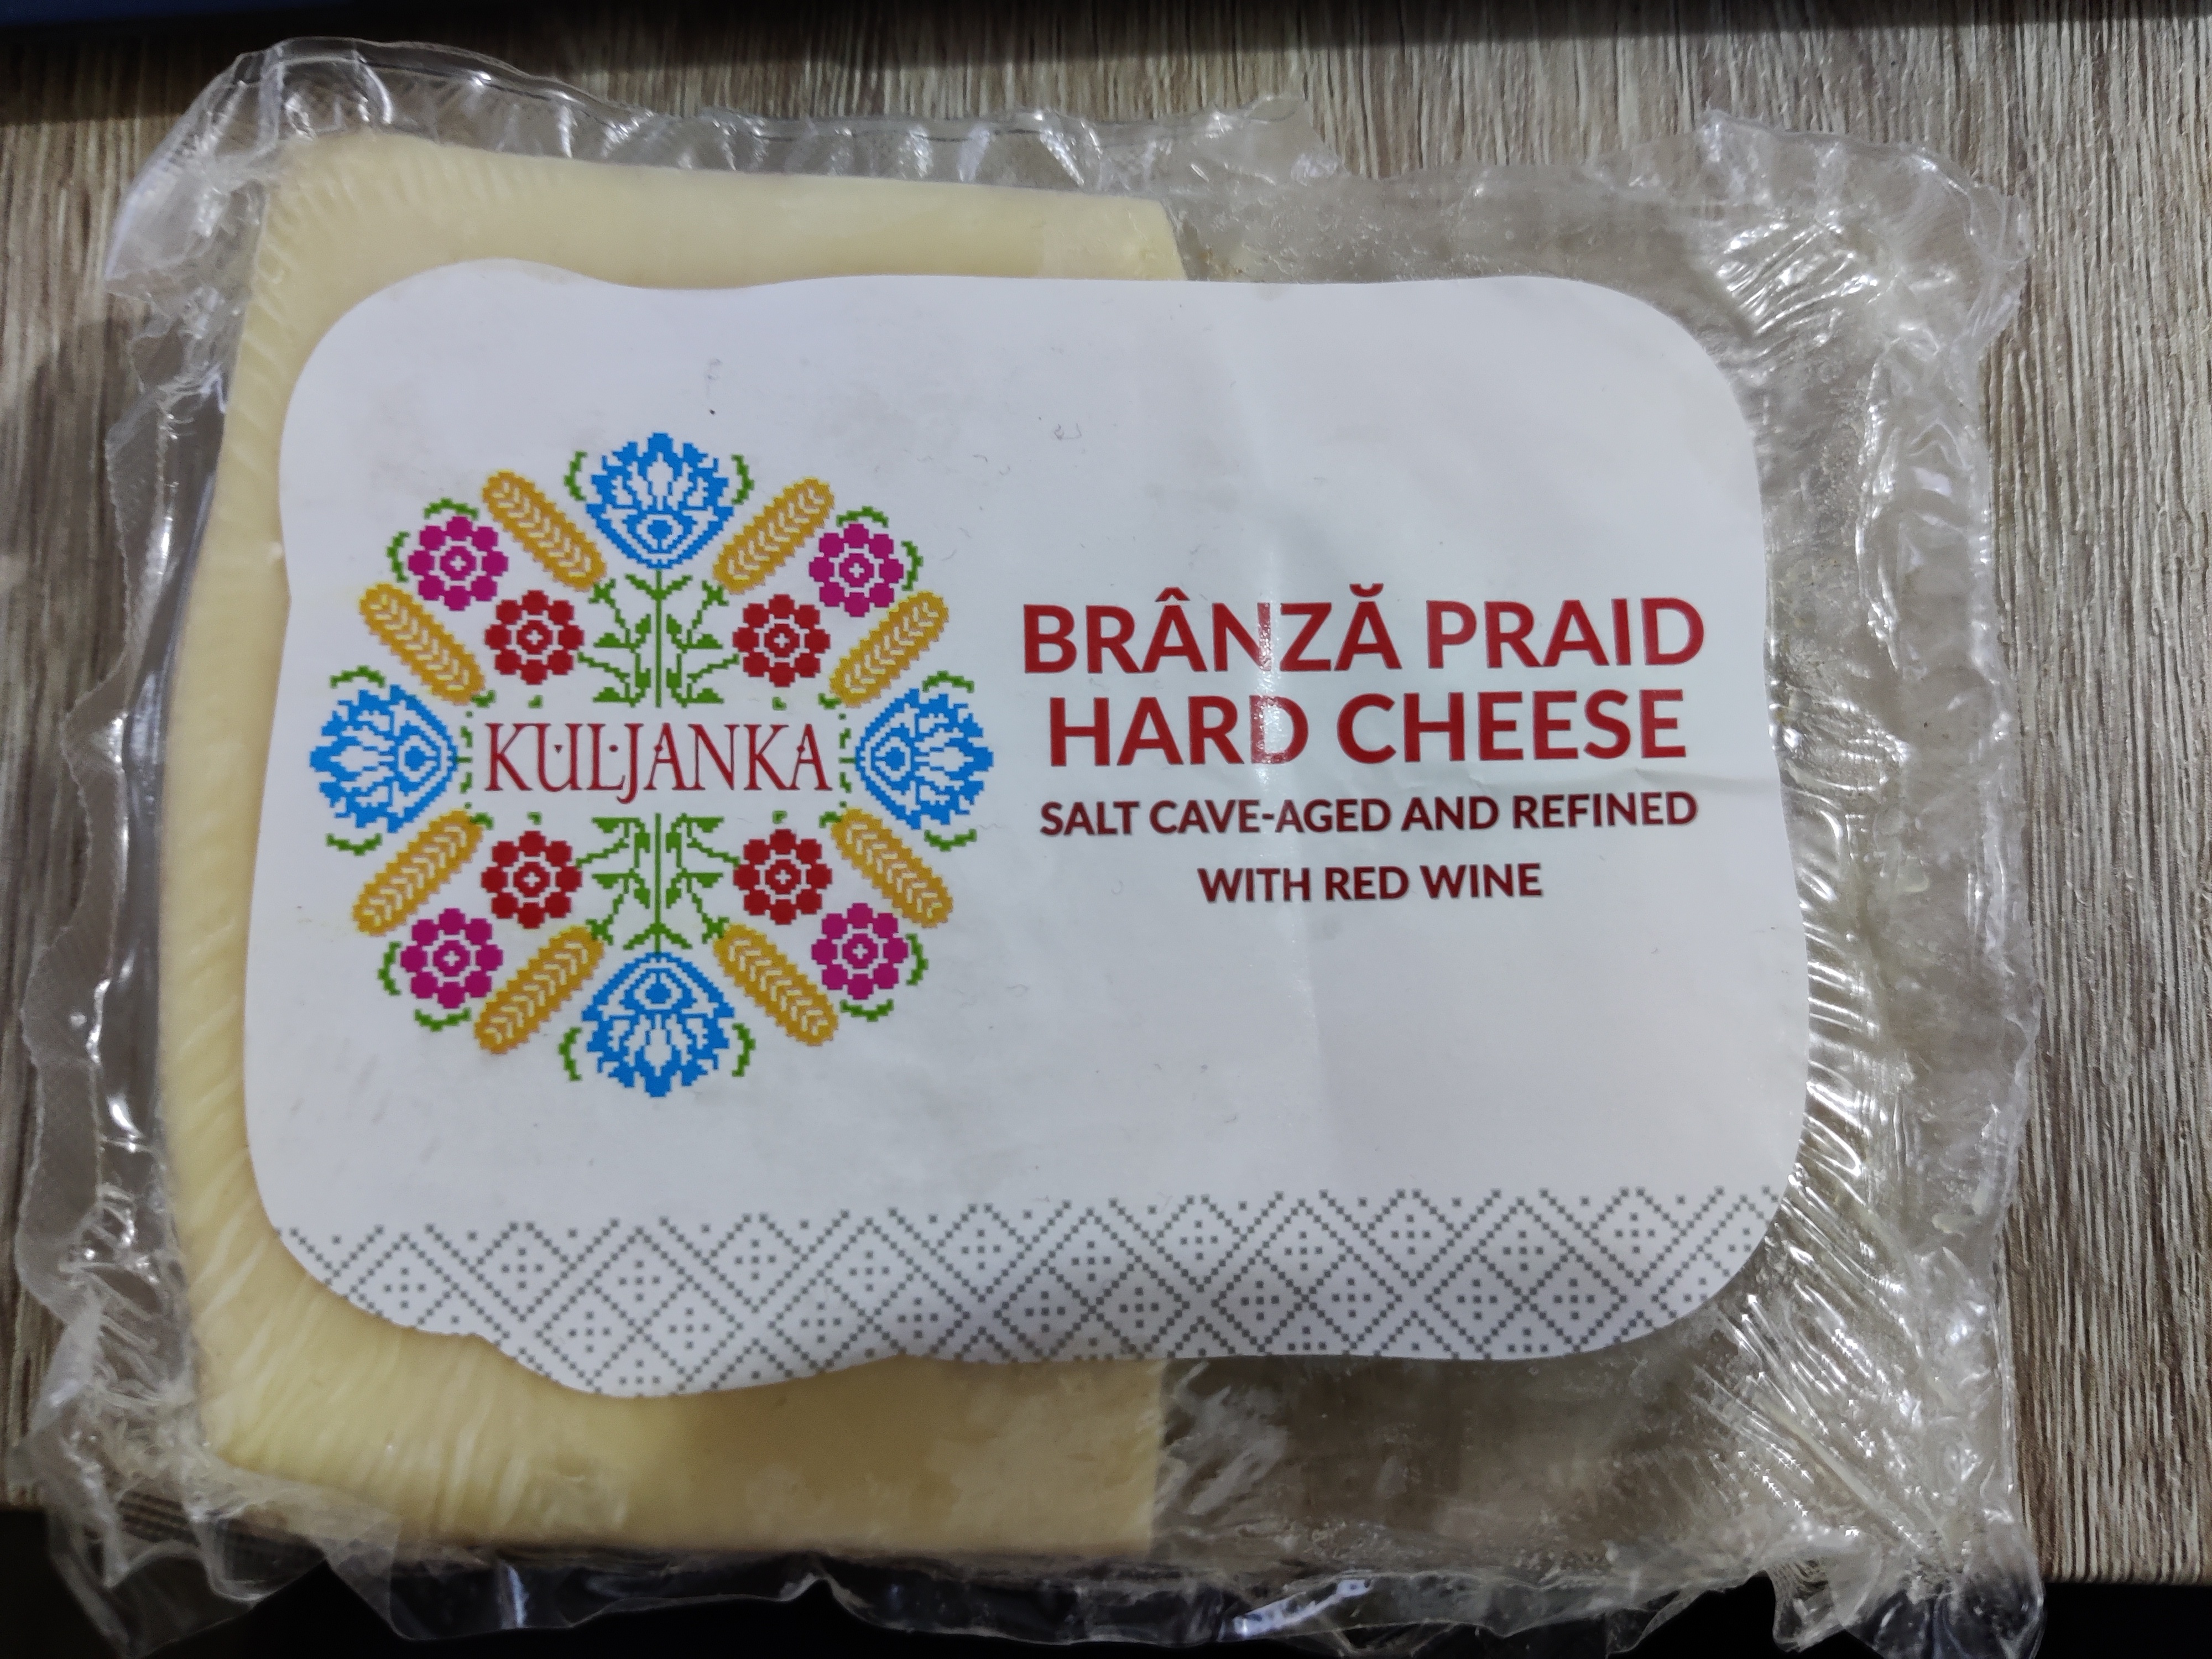 Praid Cheese